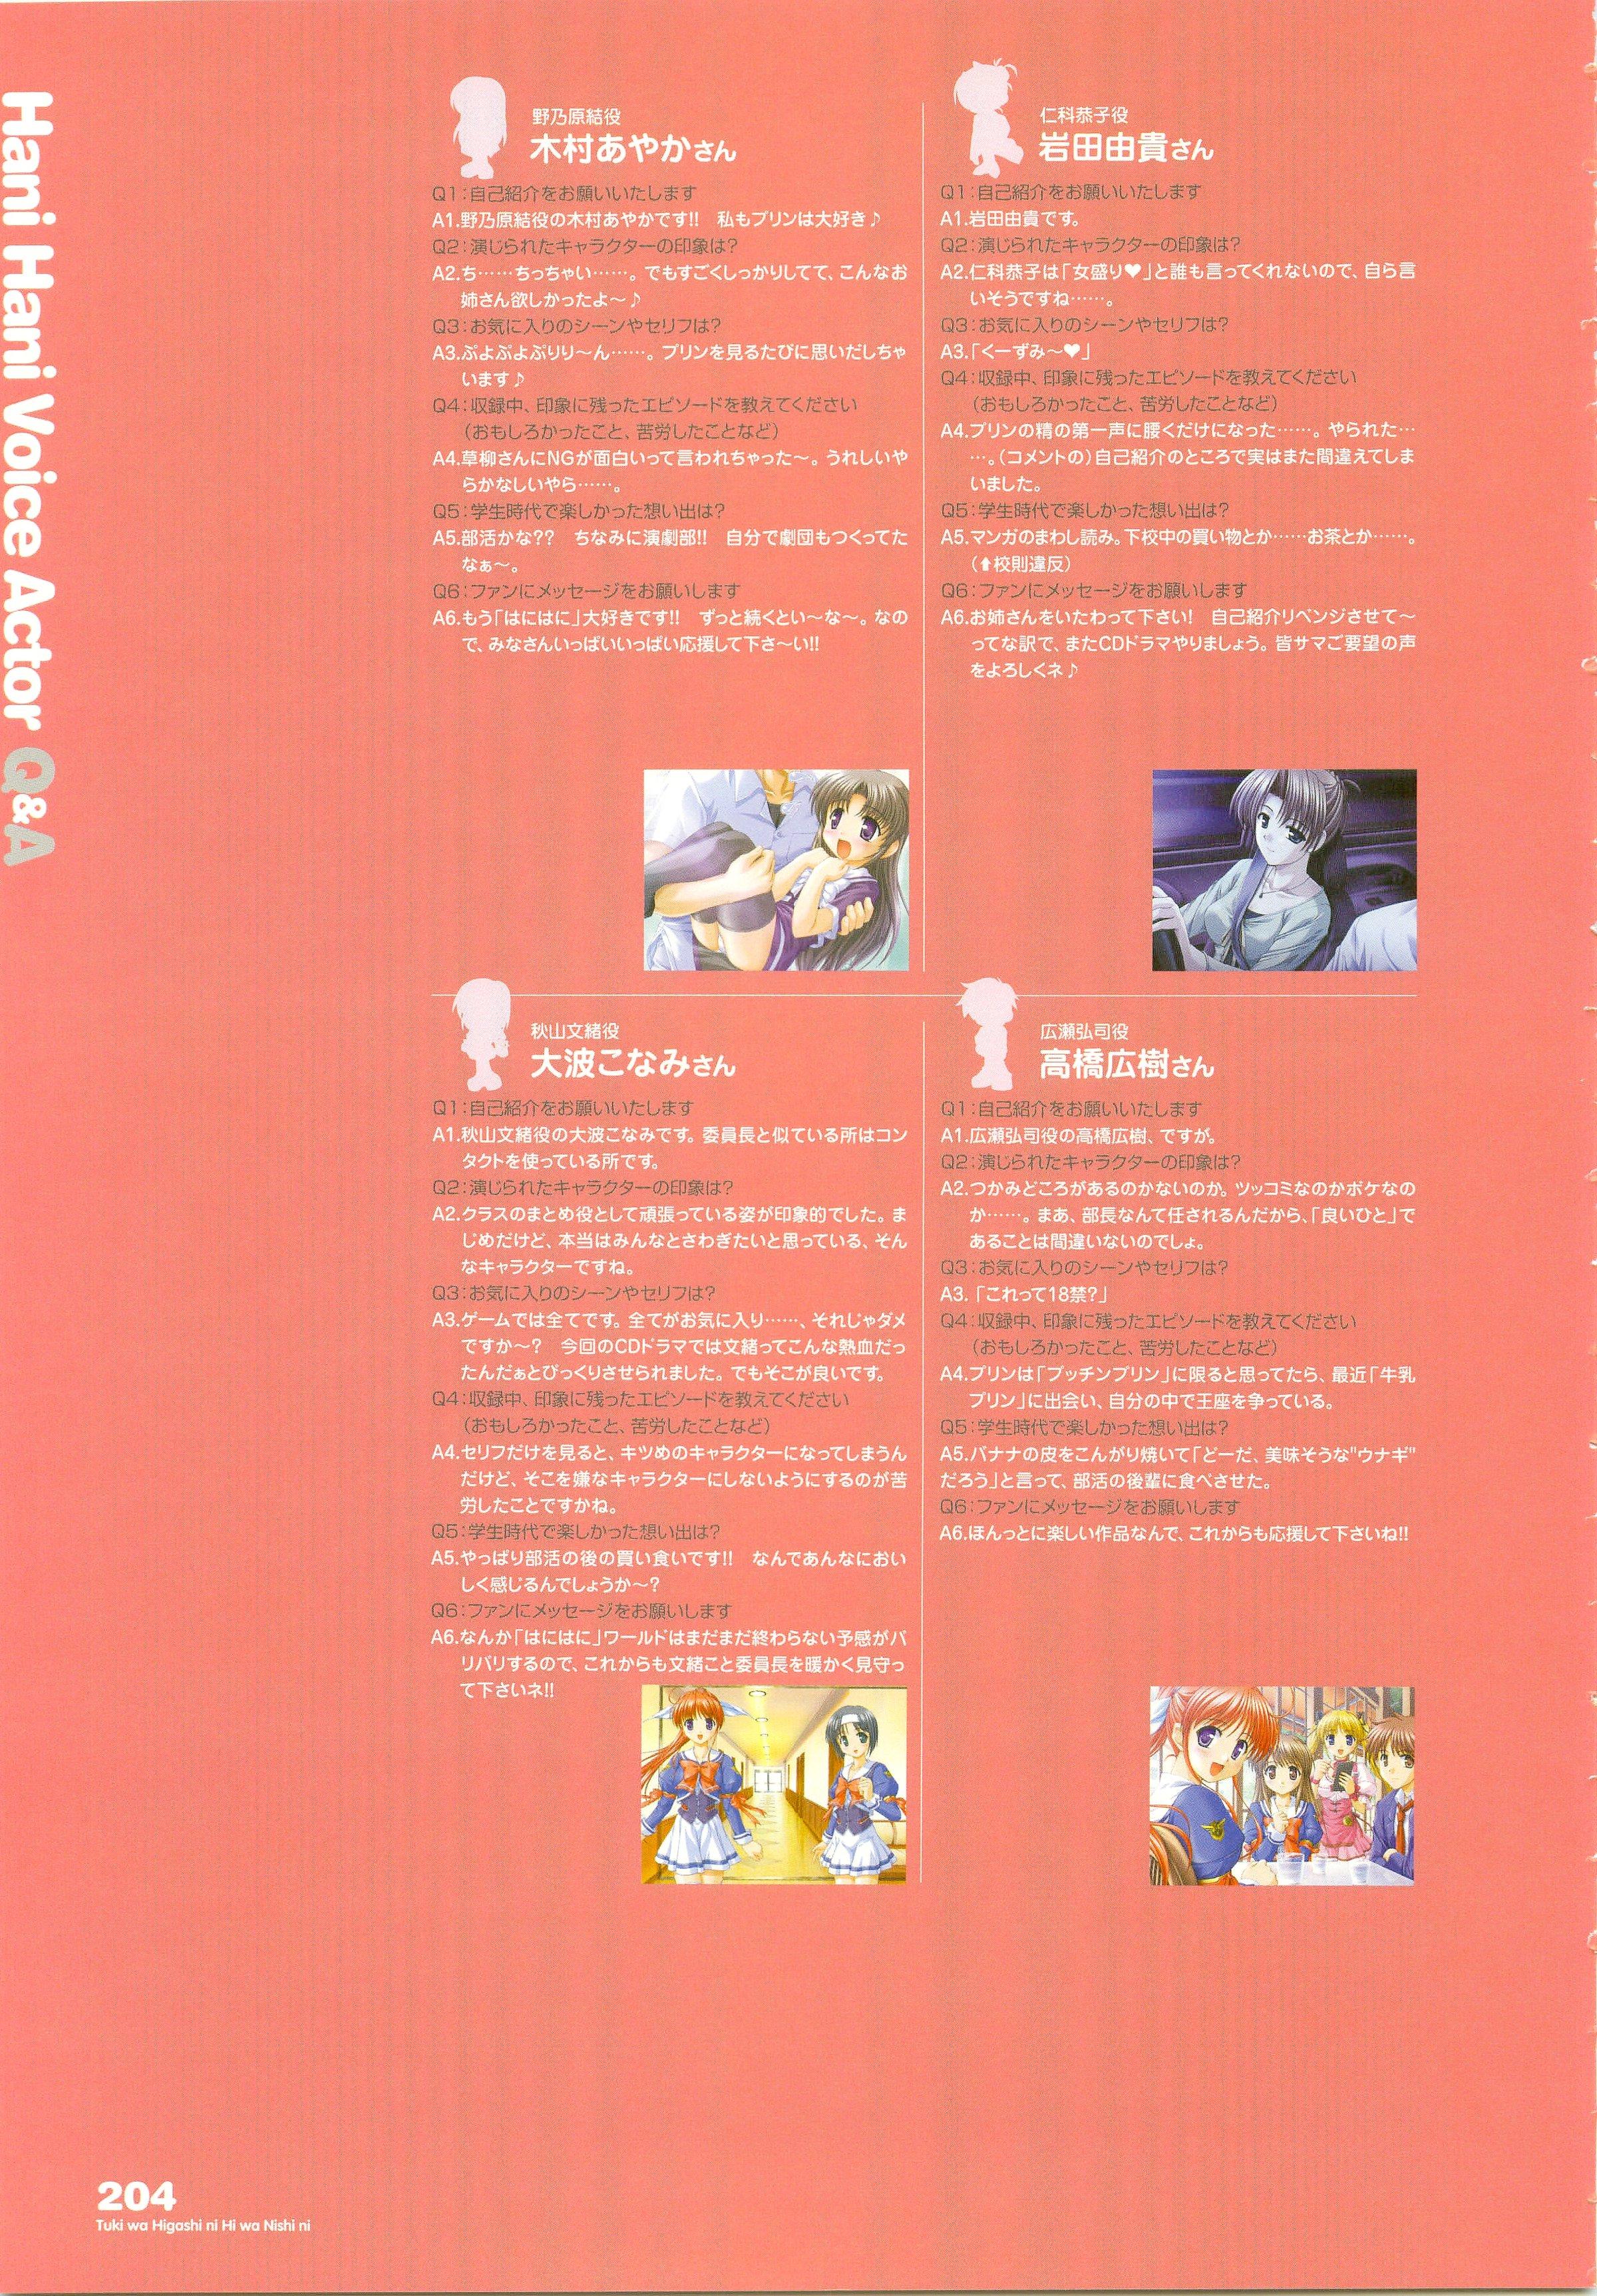 Tsuki wa Higashi ni Hi wa Nishi ni ～ Operation Sanctuary ～ Visual Fan Book 245